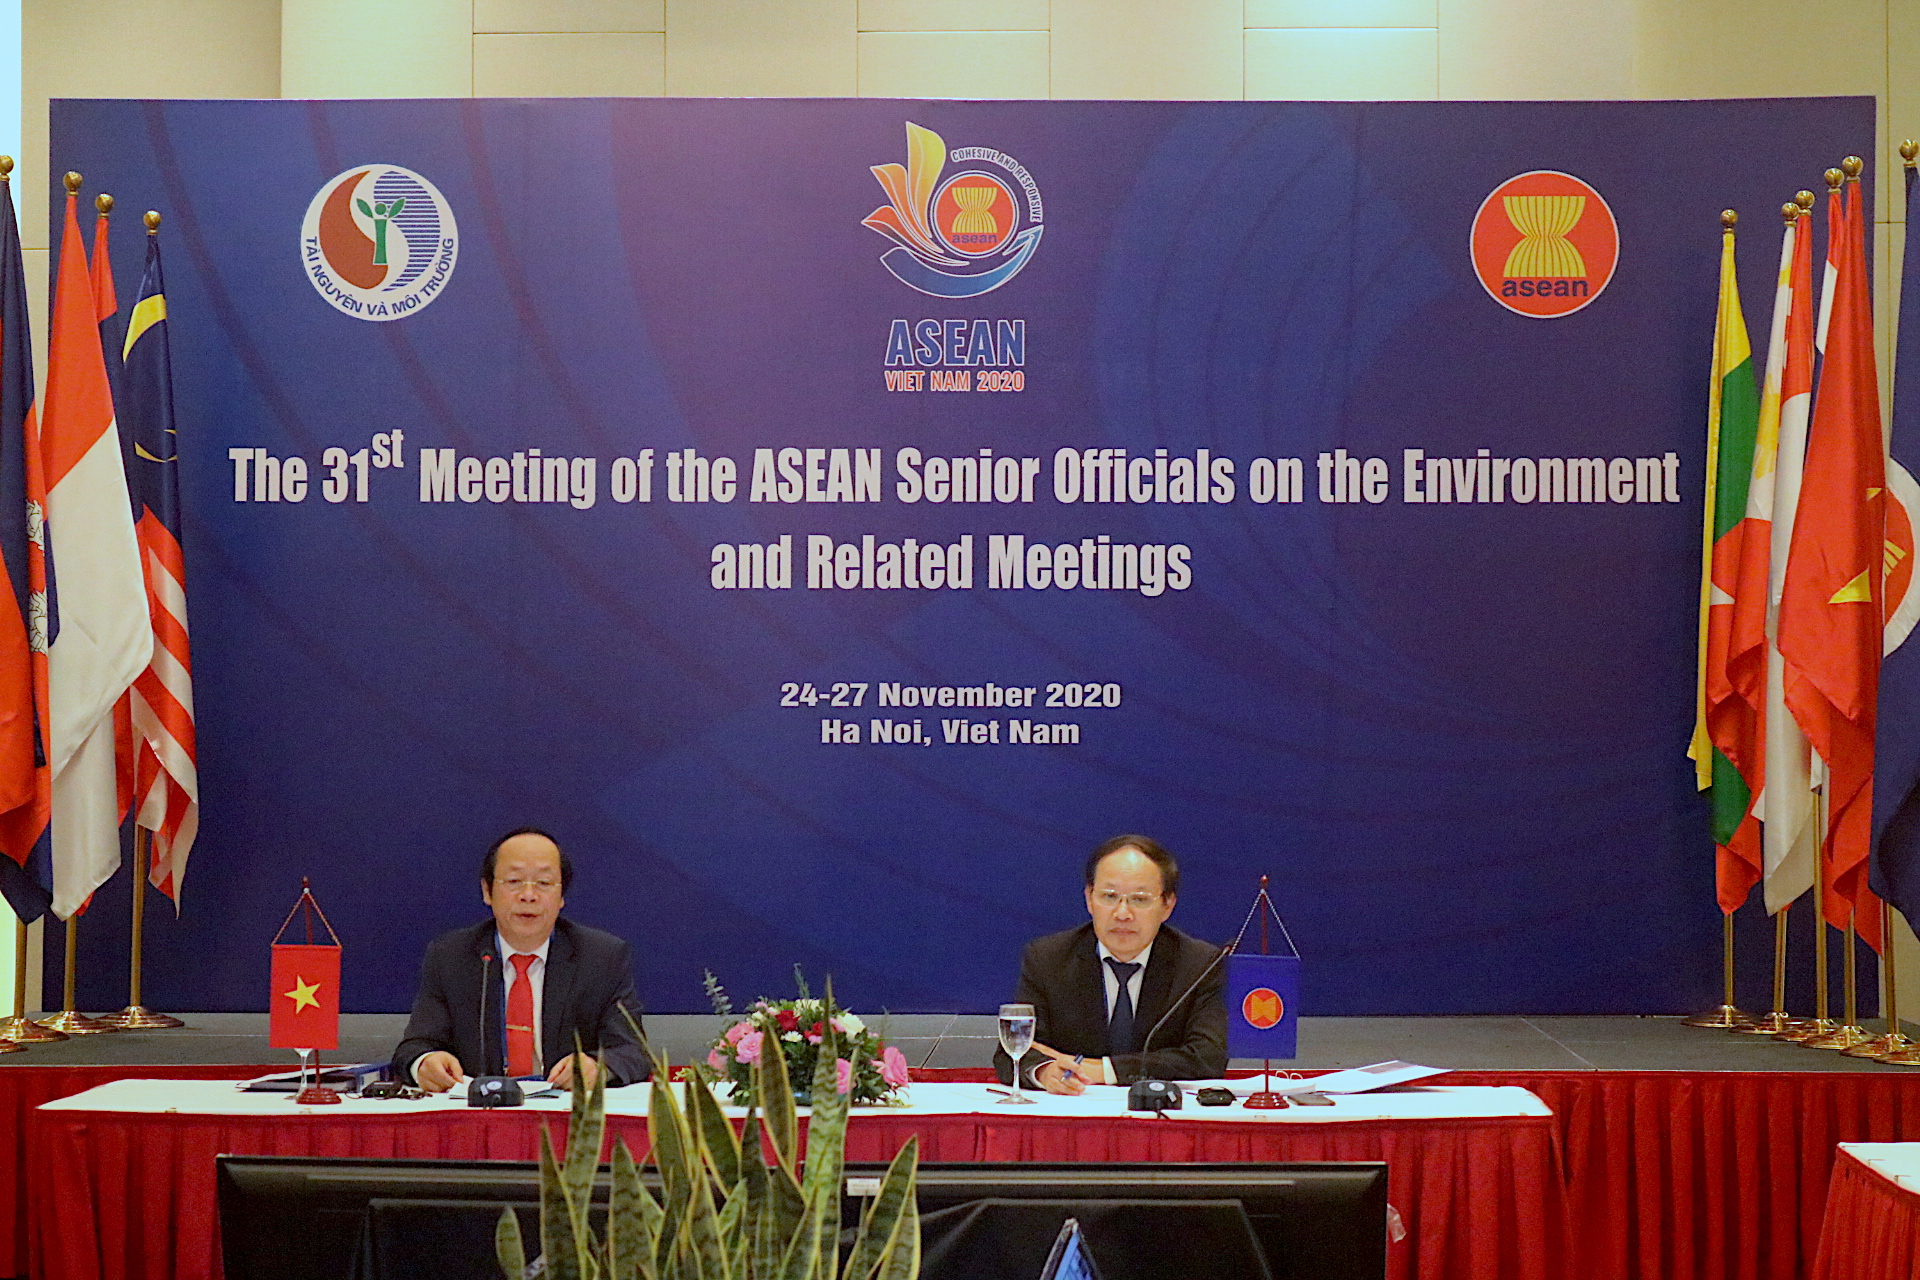 Hội nghị Quan chức cao cấp ASEAN về môi trường lần thứ 31